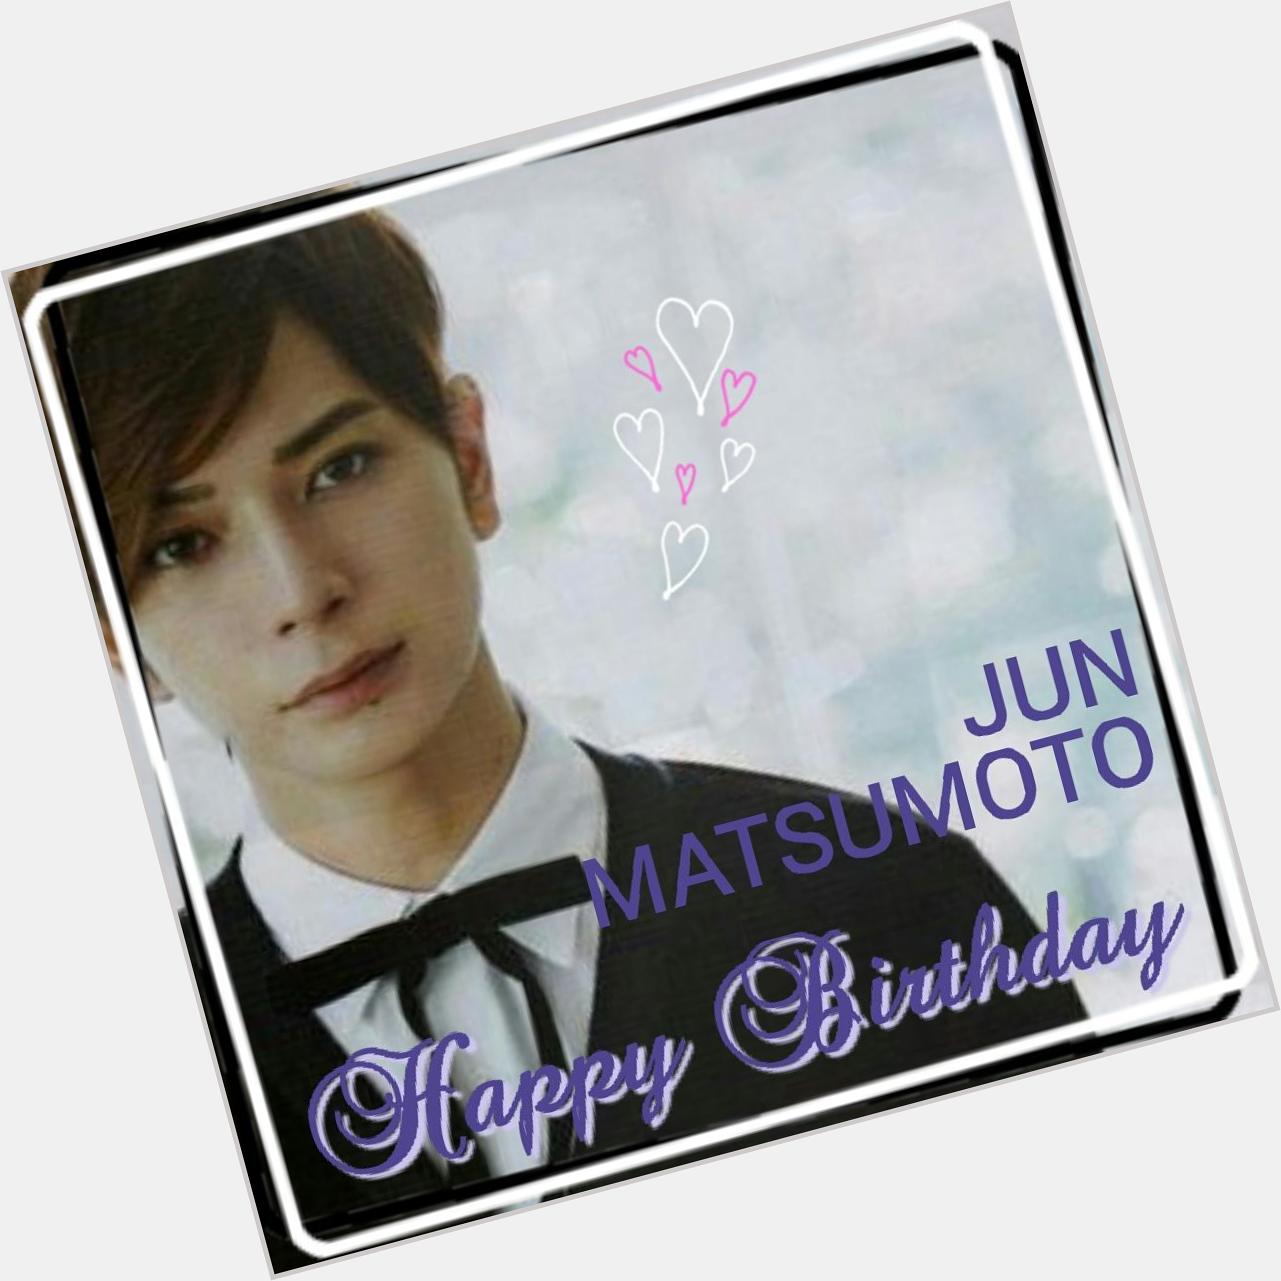 JUN MATSUMOTO 
Happy Birthday   1983.08.30 2015.08.30                                                           